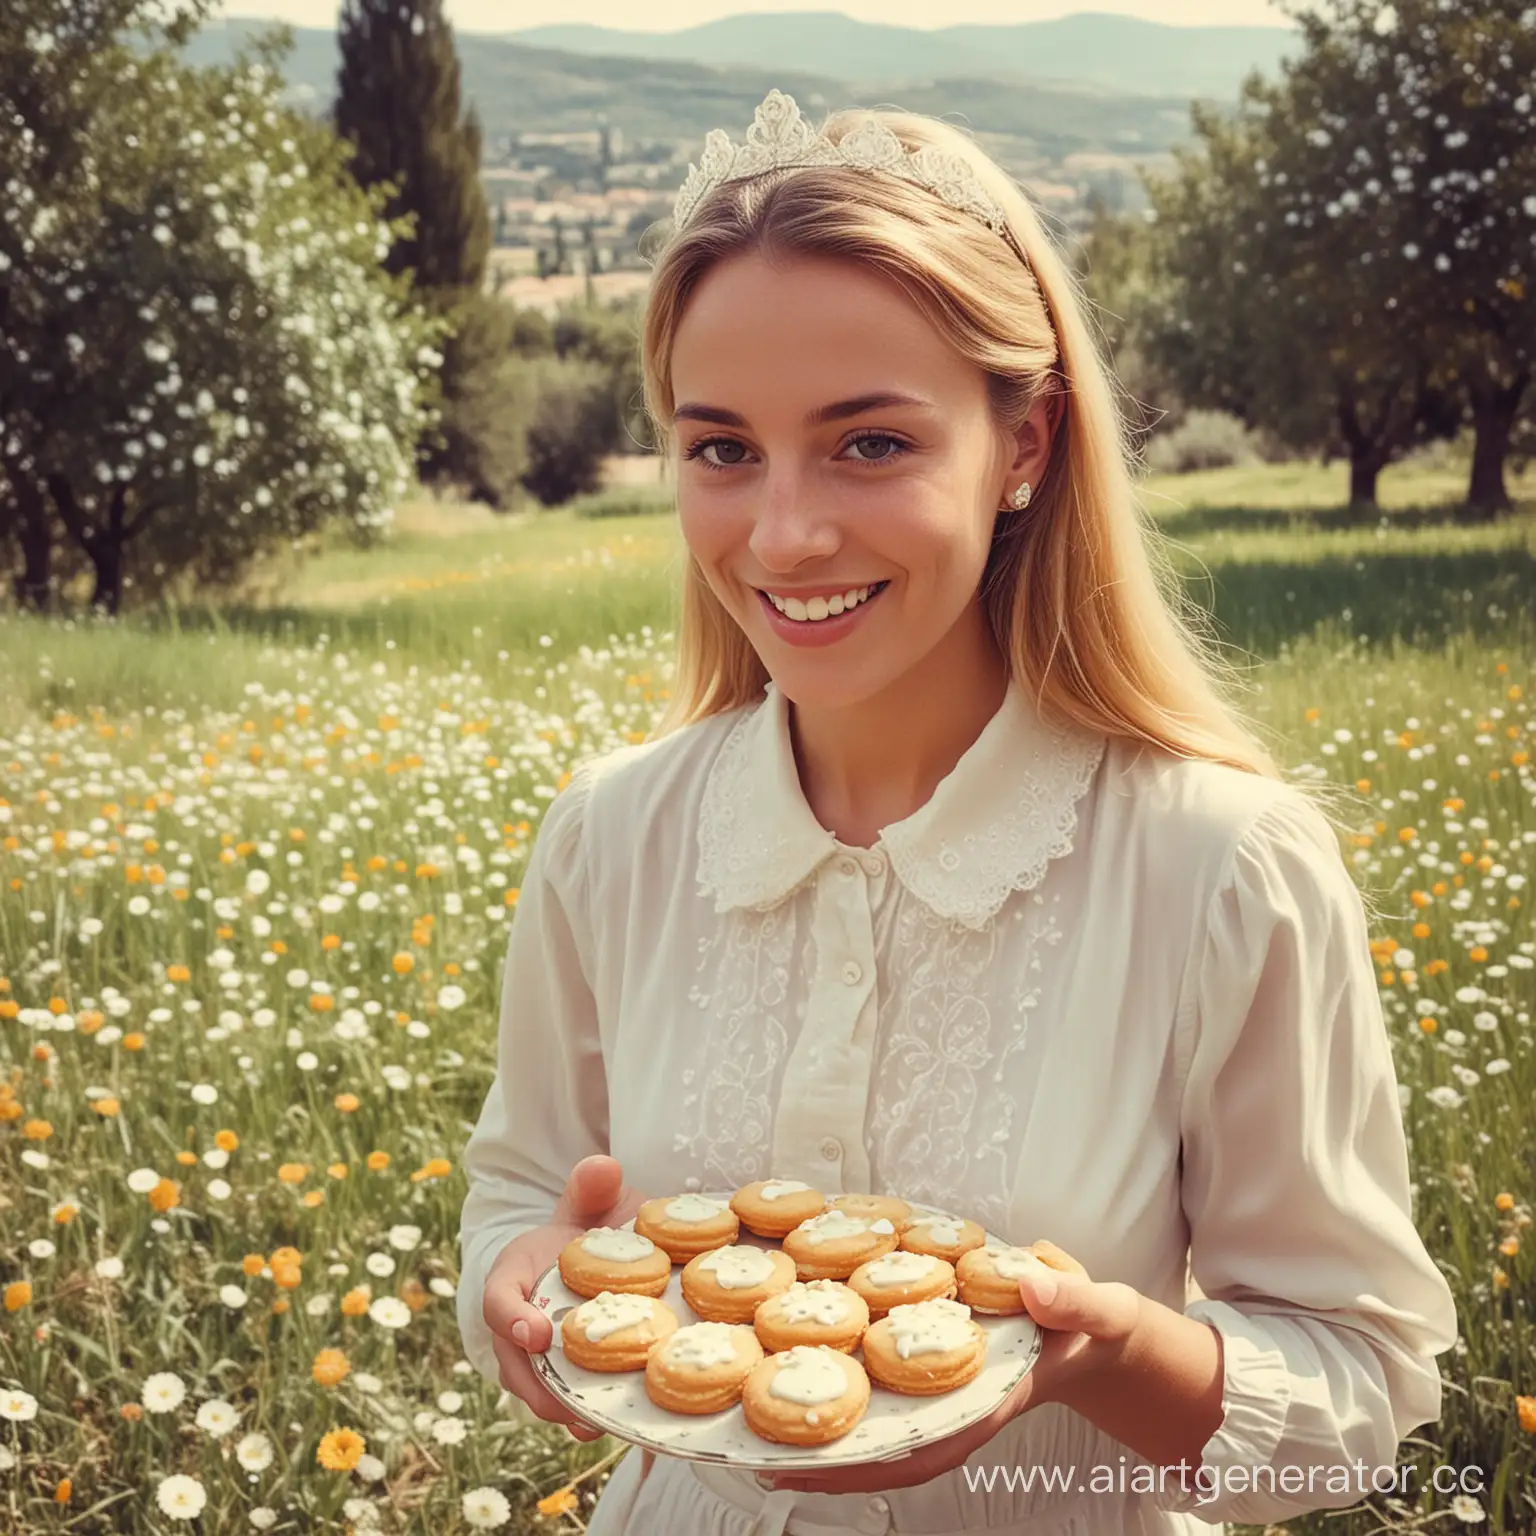 счастливая принцесса  на юге Франции 60-е годы среди красивой природы  ест  аппетитные маленькие французские печенья калиссоны с белой помадкой сверху , овальной формы.   в ретро стиле  как фото, не картинка